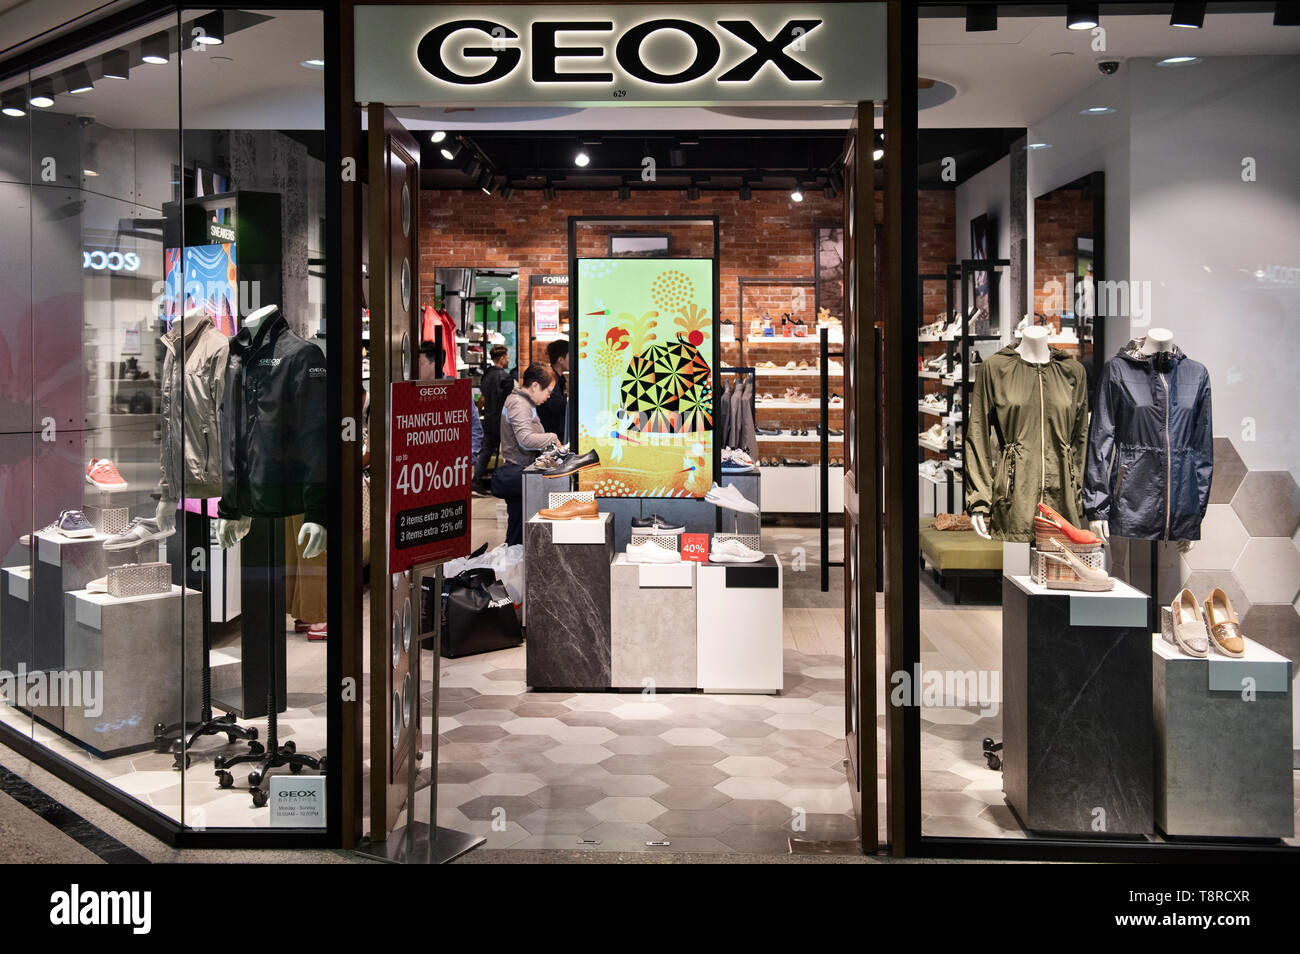 salto Extreme armoede schermutseling Geox store Banque de photographies et d'images à haute résolution - Alamy